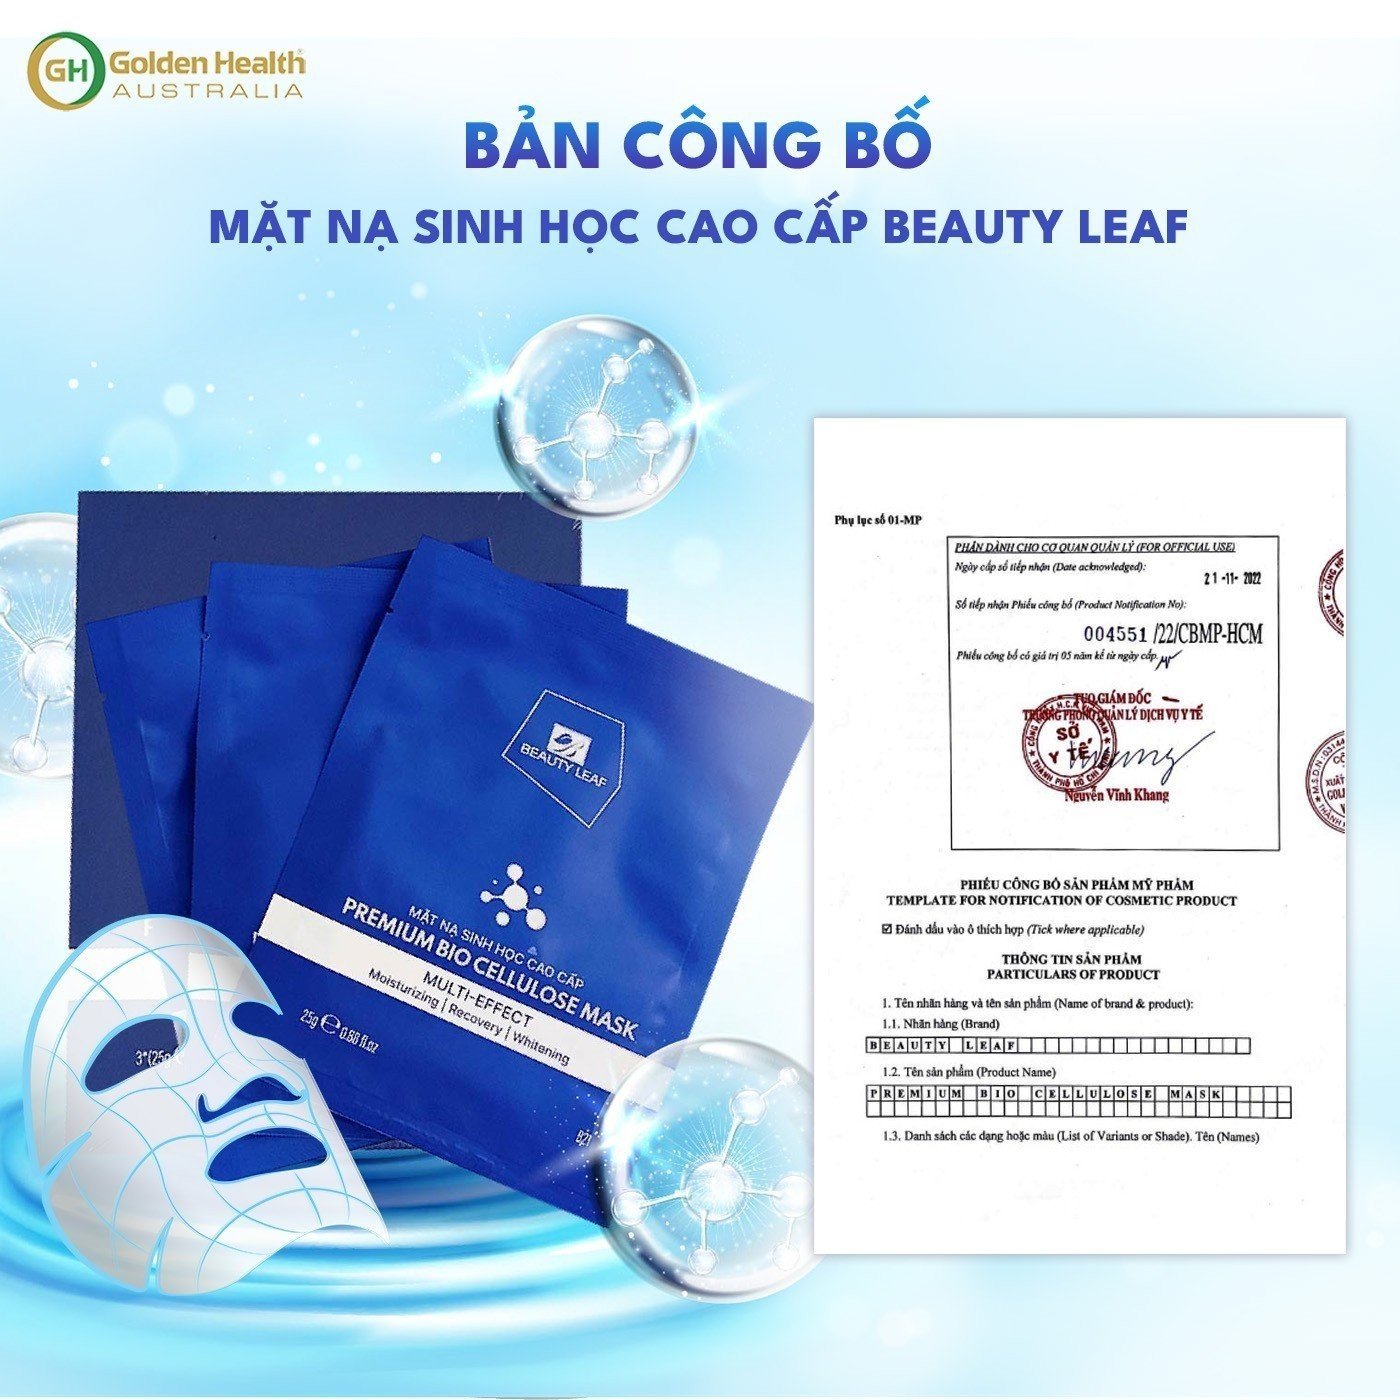 [GOLDEN HEALTH] Mặt Nạ Sinh Học Cao Cấp Hỗ Trợ Làm Giảm Thâm Nám, Tàn Nhang, Nếp Nhăn Giúp Nâng Cơ Da Căng Bóng Hồng Hào Premium Bio Cellulose Mask Beauty Leaf (Set 3 Miếng/hộp)